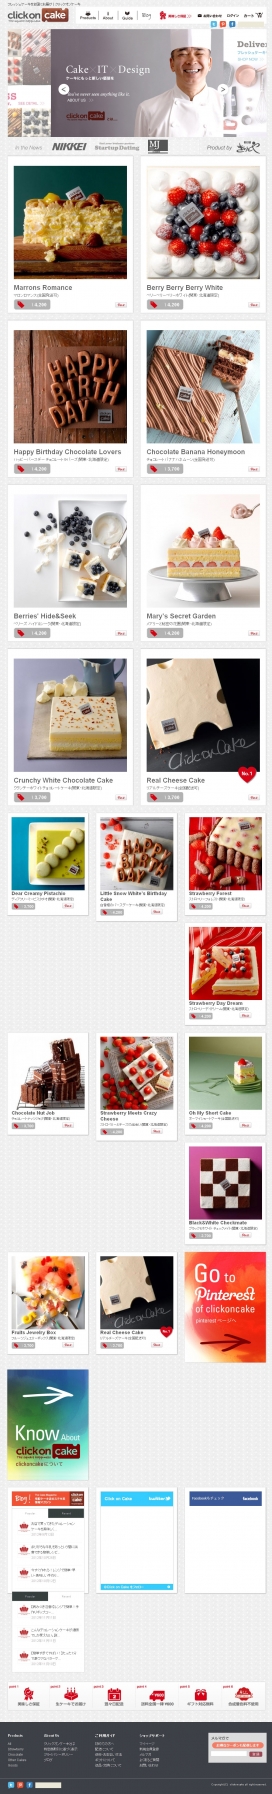 日本clickoncake新鲜蛋糕网站-提供全国各地的冷藏新鲜的生蛋糕美食。